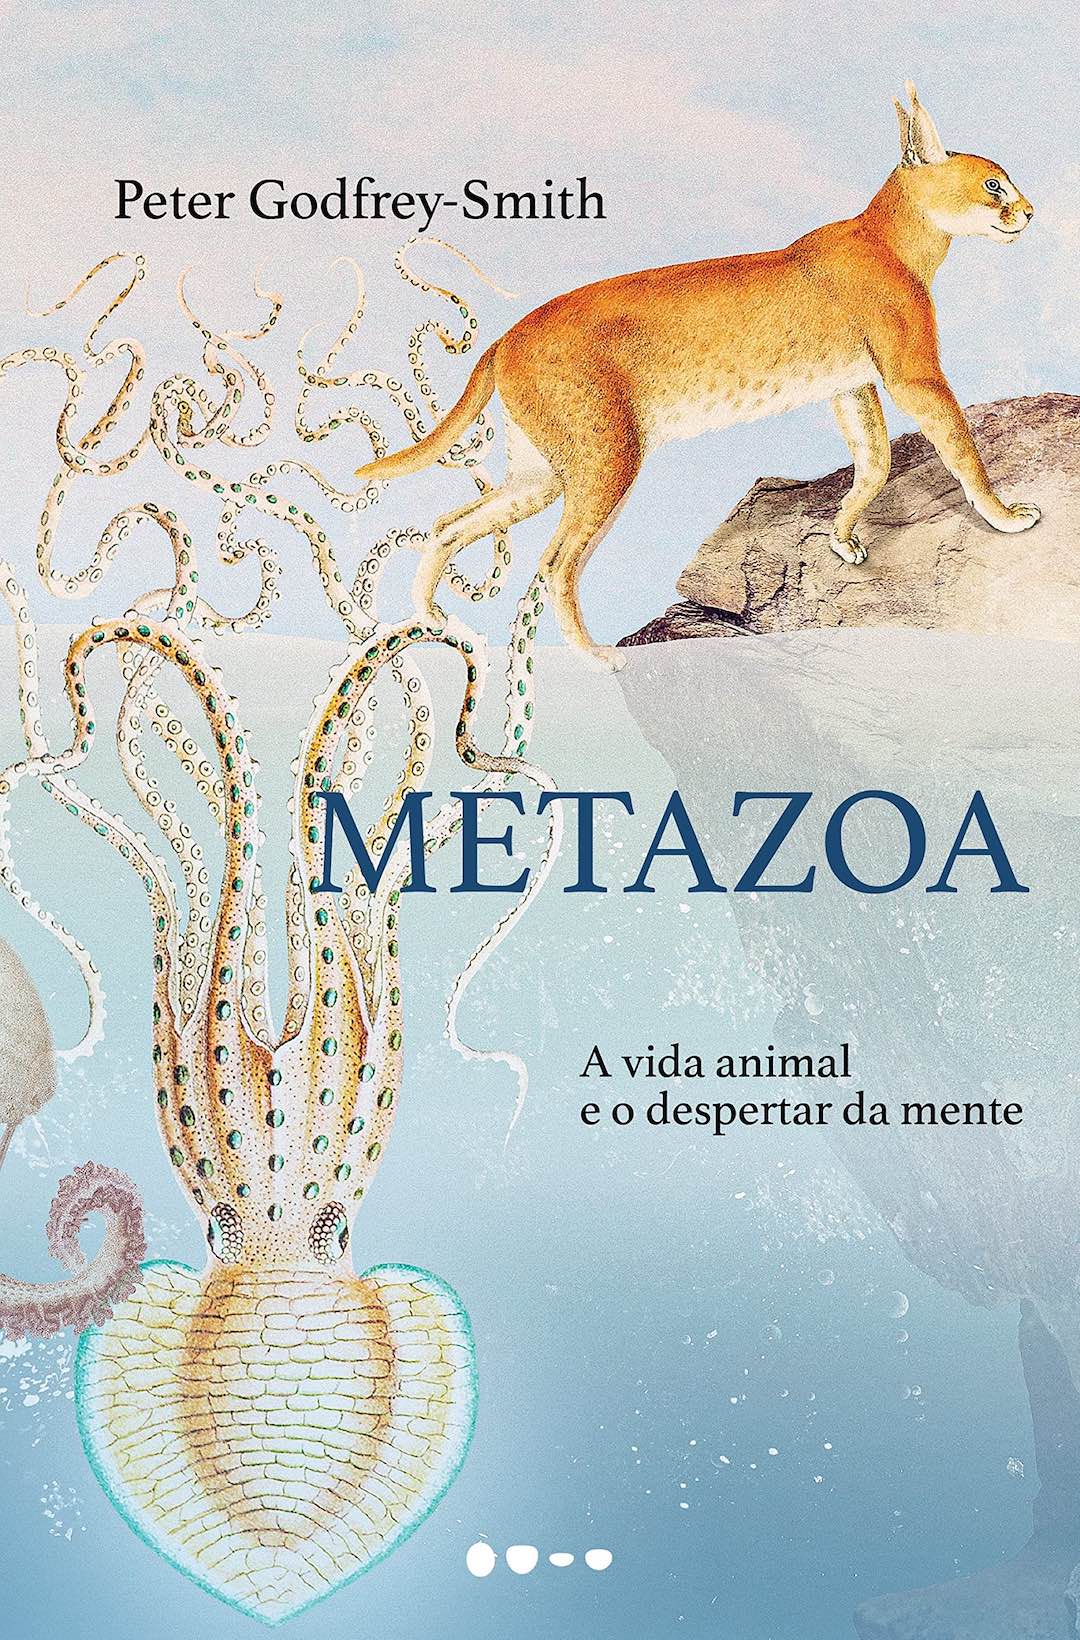 Metazoa: A vida animal e o despertar da mente - Peter Godfrey-Smith